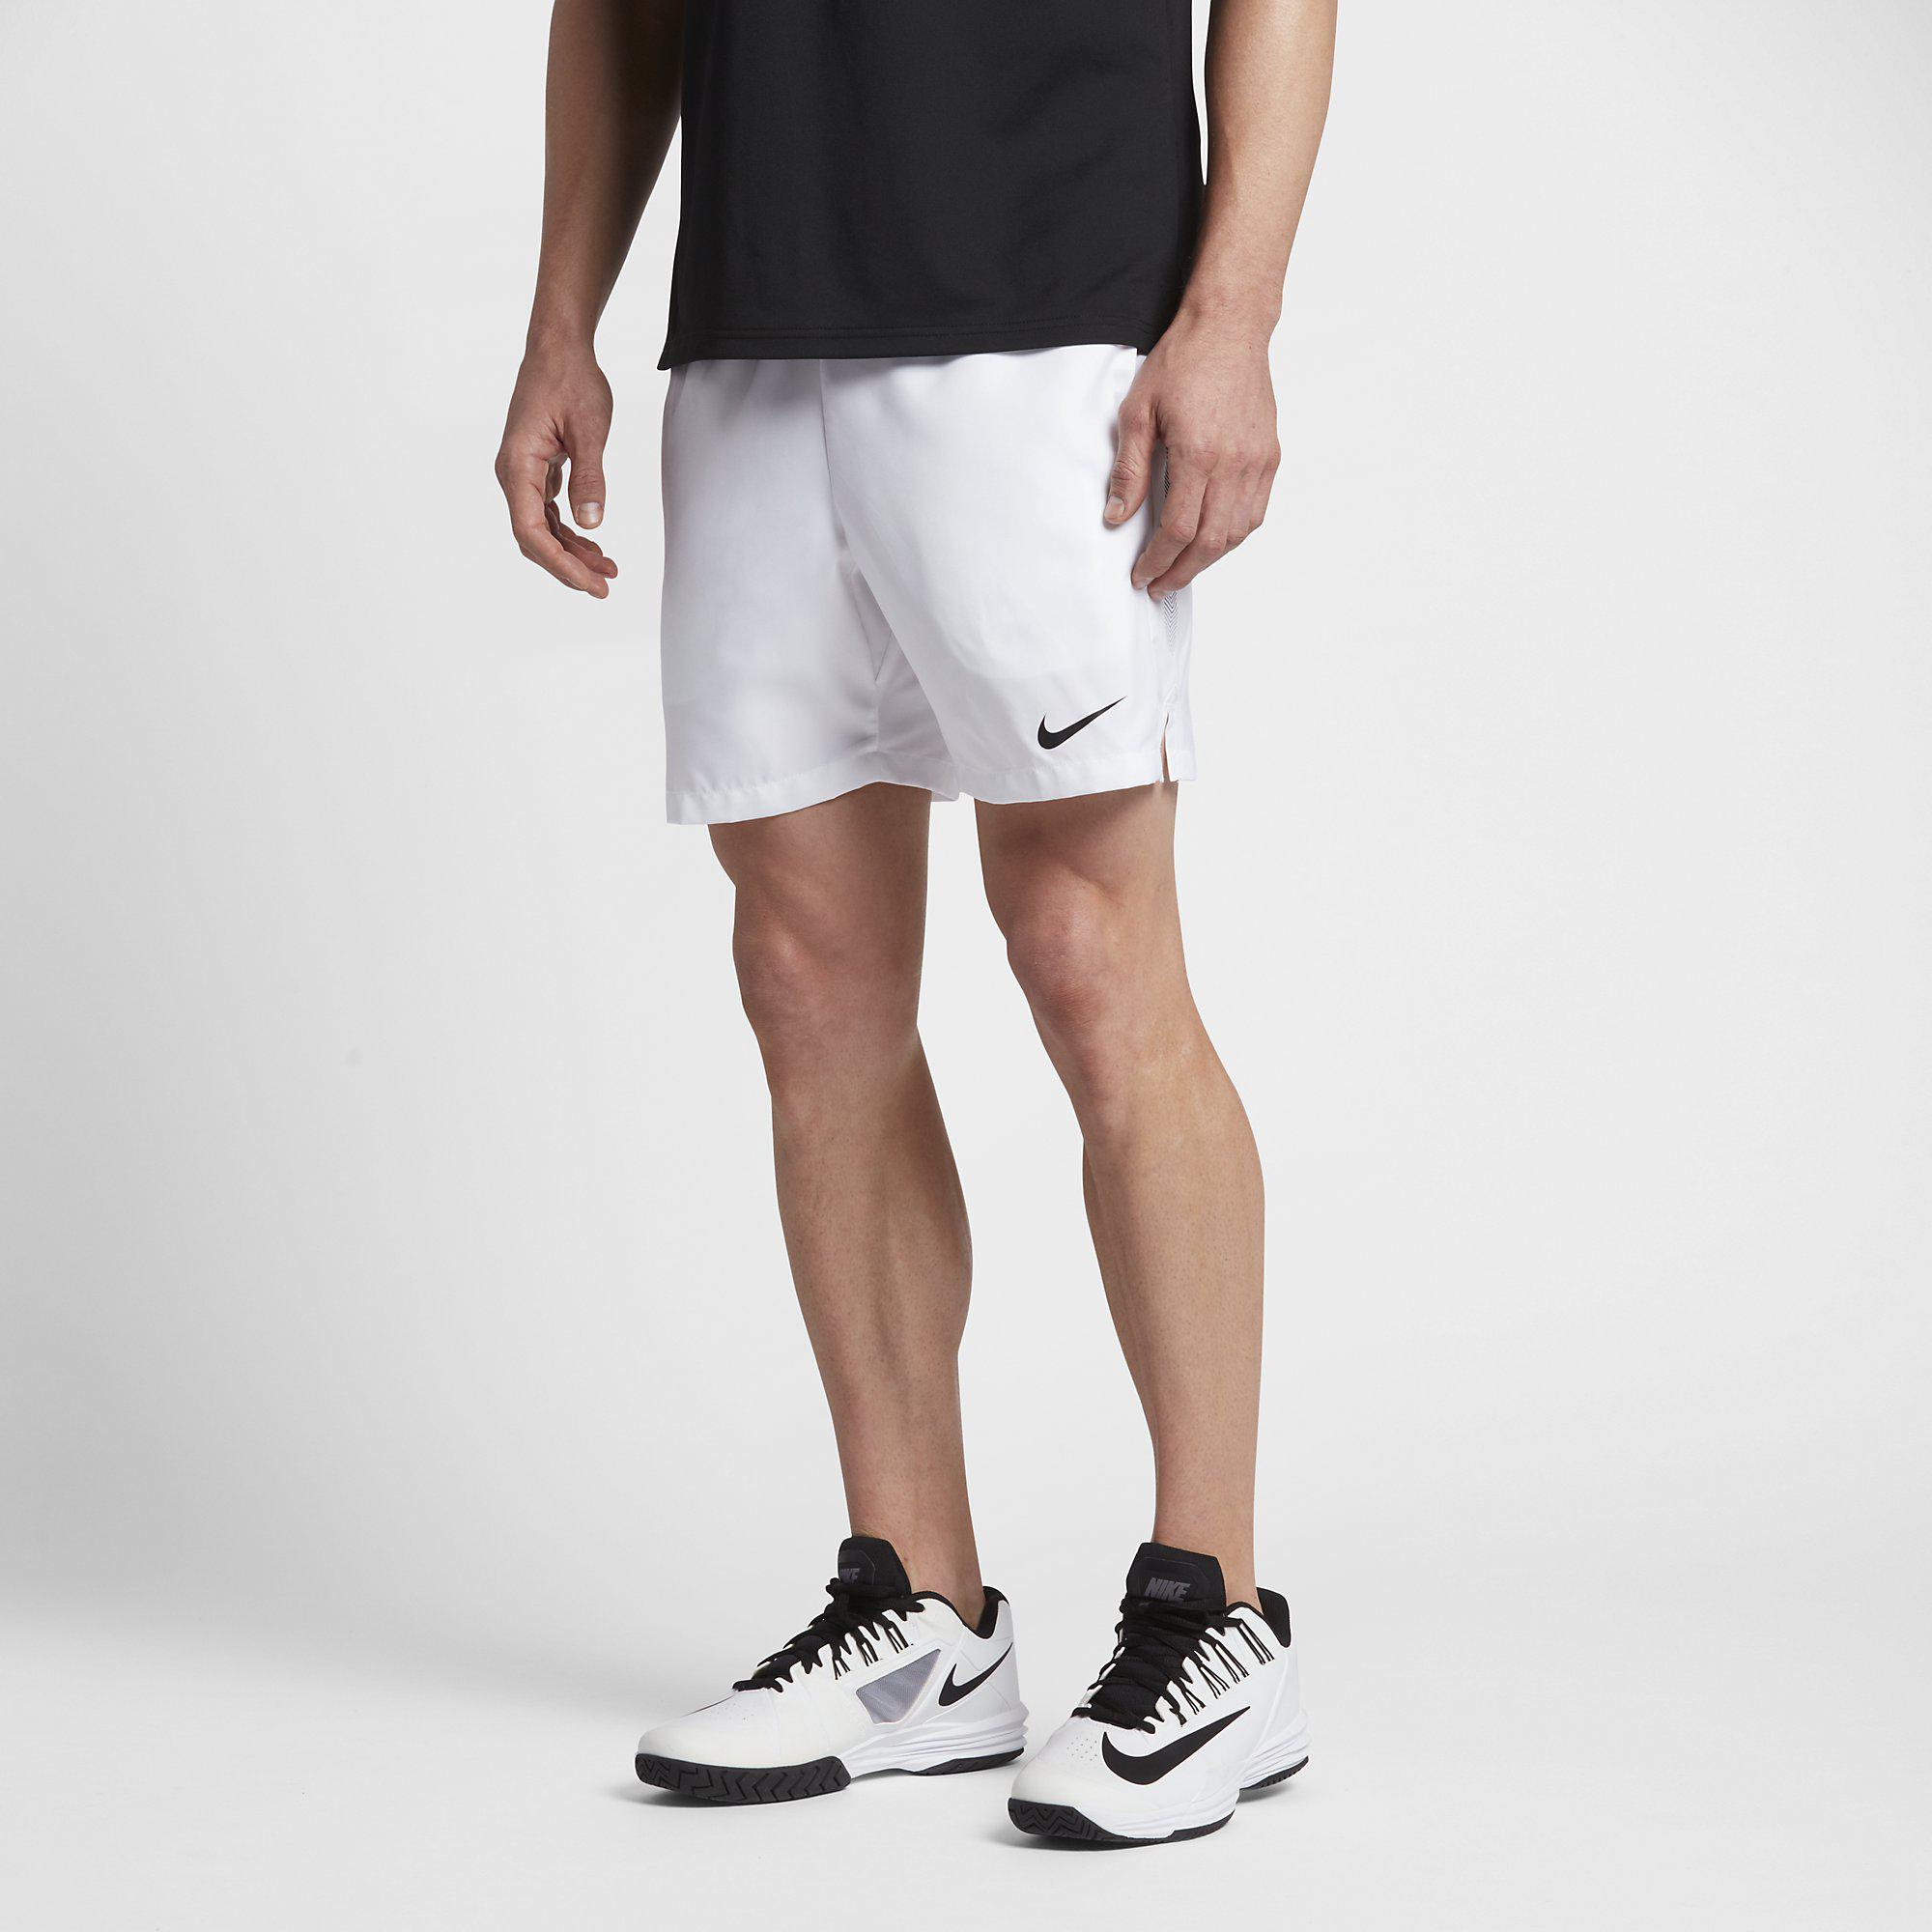 Nike Mens Dry 7 Inch Tennis Shorts - White/Black - Tennisnuts.com